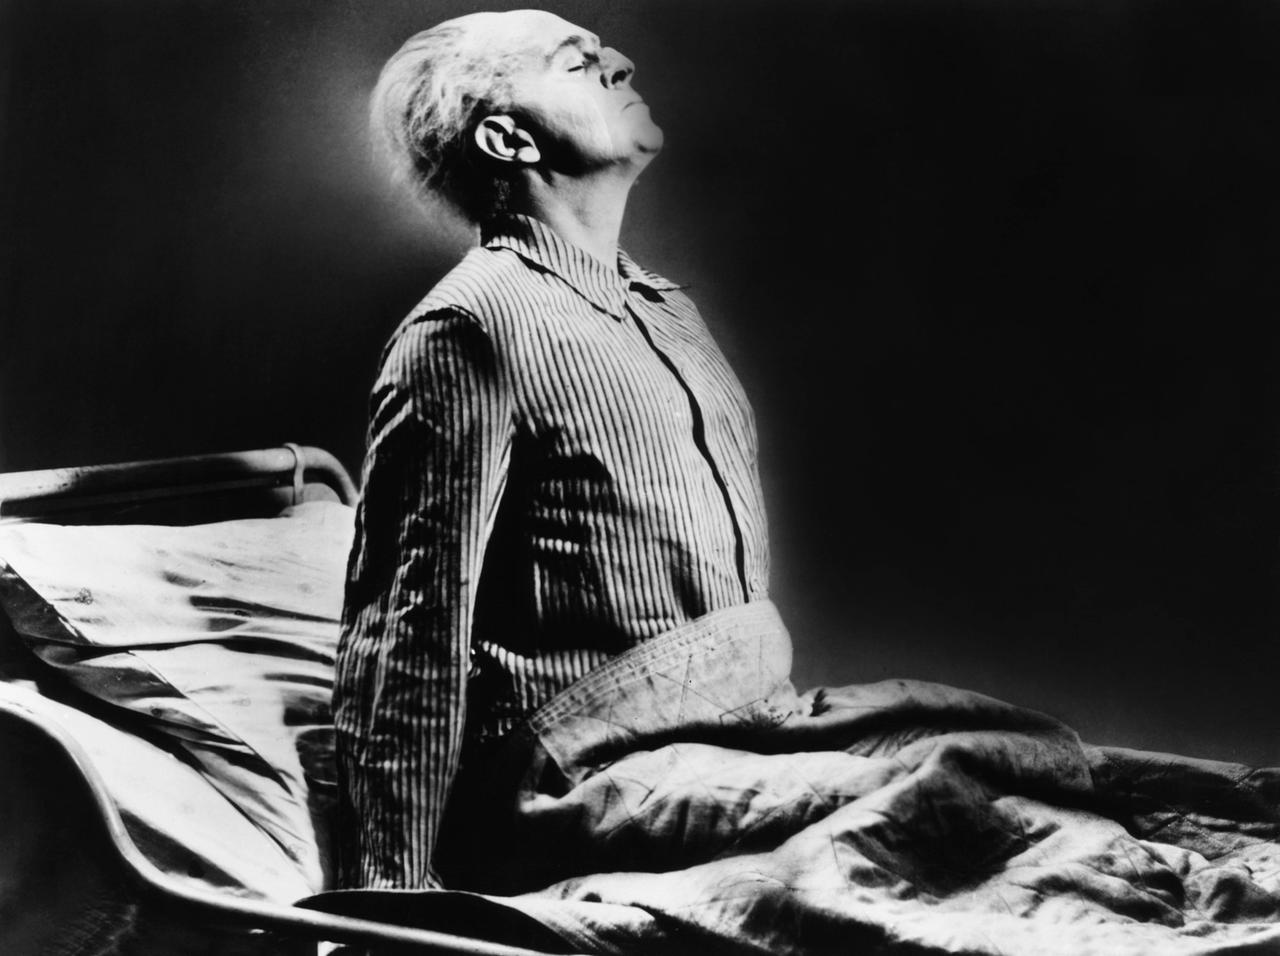 Im Filmstill aus "Das Testament des Dr. Mabuse" sitzt Dr. Mabuse (Rudolf Klein-Rogge) aufrecht und mit weggetretenem Gesichtsausdruck in seinem Bett.